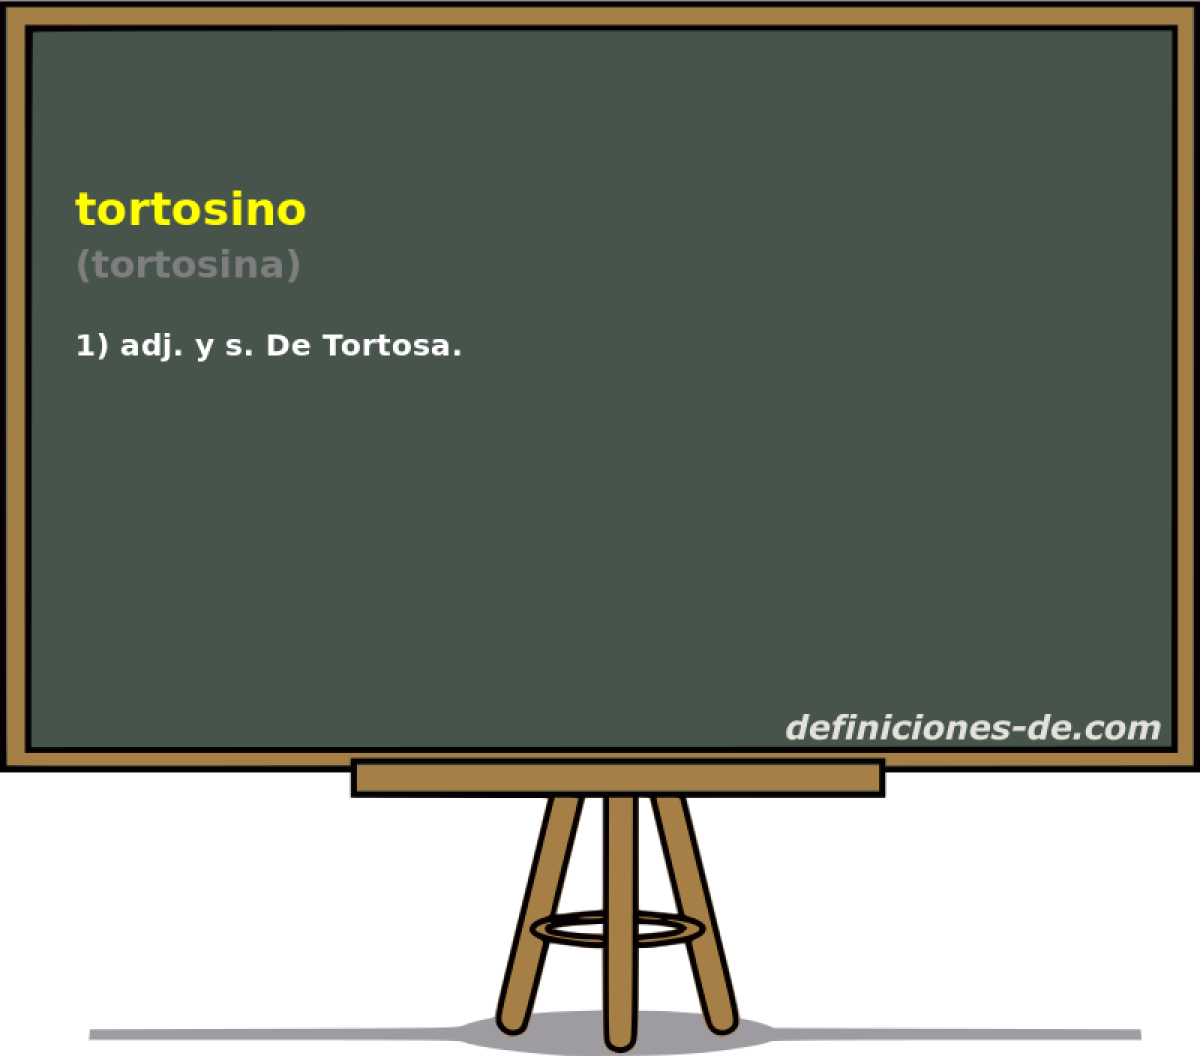 tortosino (tortosina)